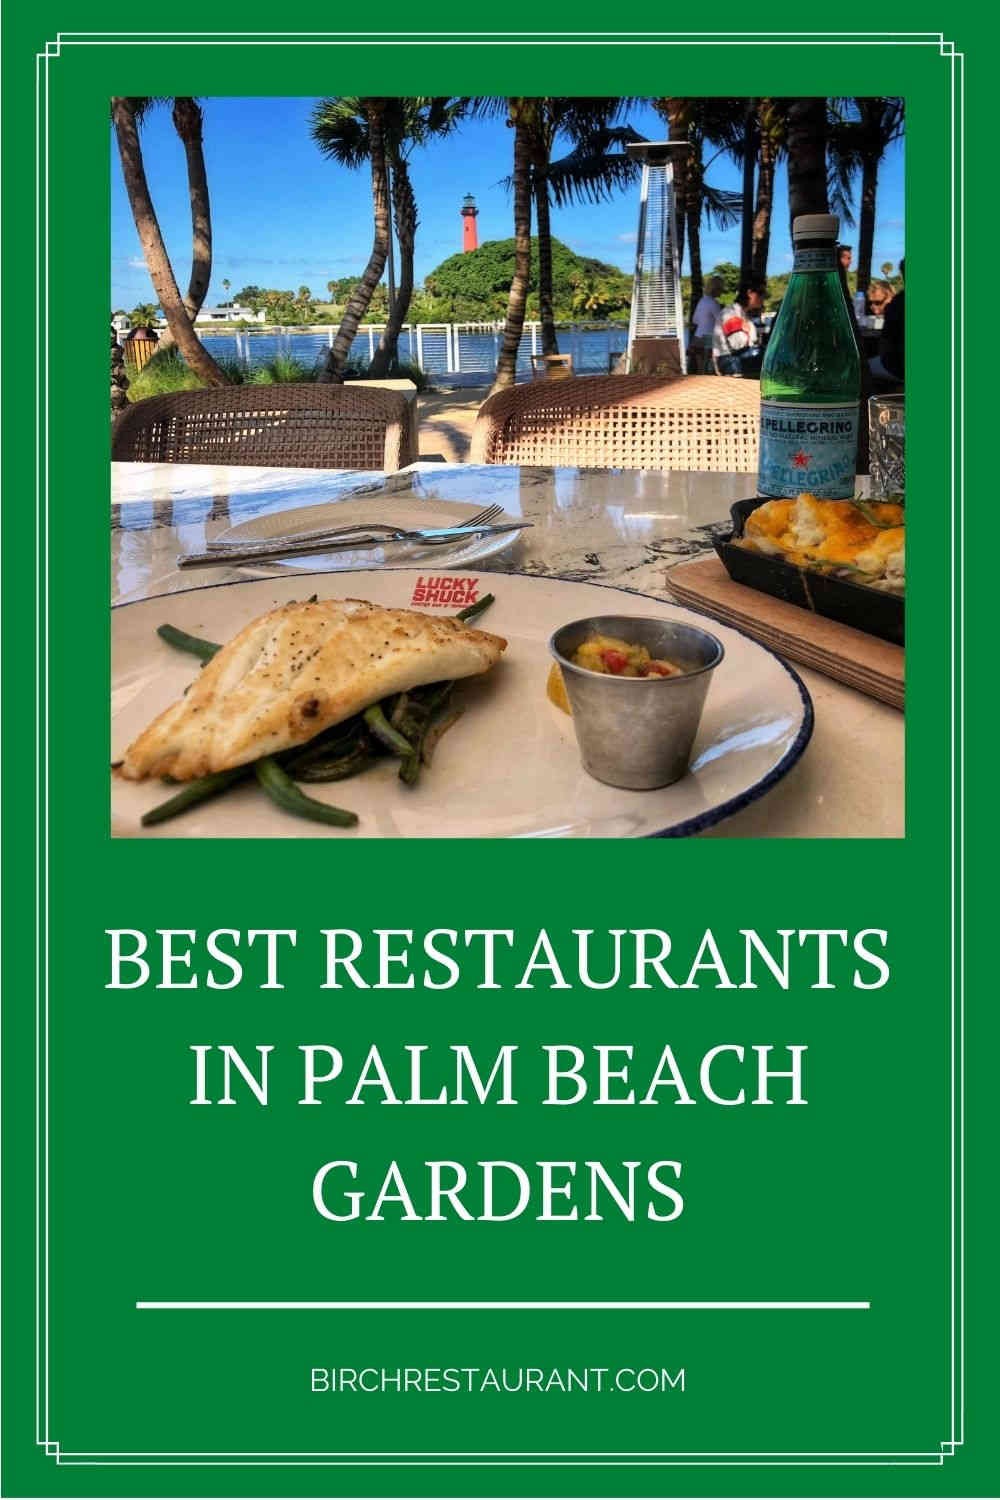 Best Restaurants in Palm Beach Gardens